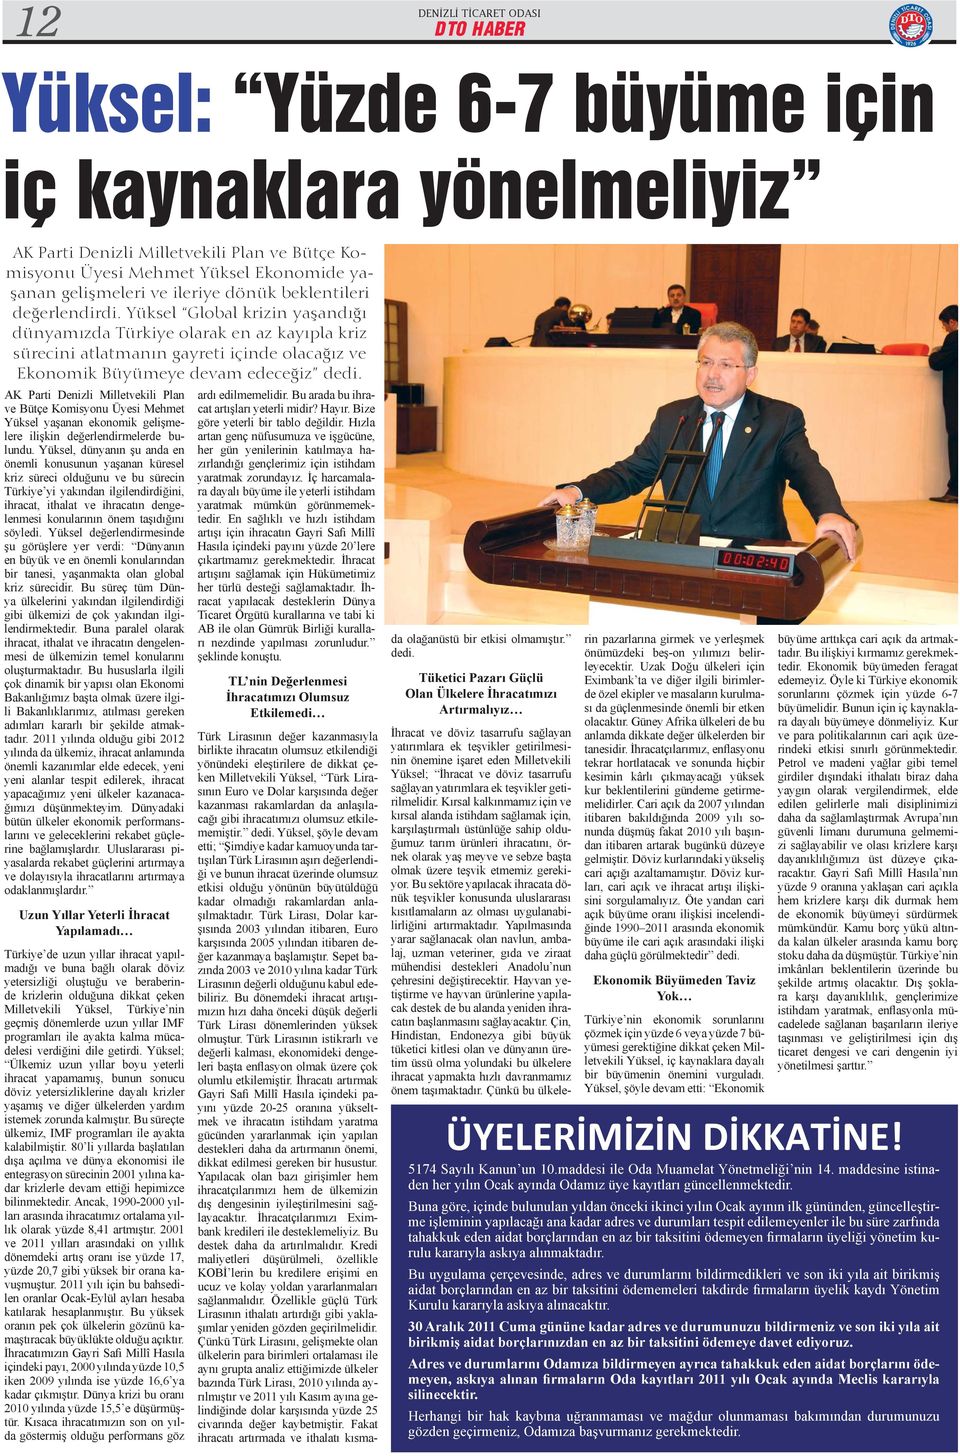 AK Parti Denizli Milletvekili Plan ve Bütçe Komisyonu Üyesi Mehmet Yüksel yaşanan ekonomik gelişmelere ilişkin değerlendirmelerde bulundu.